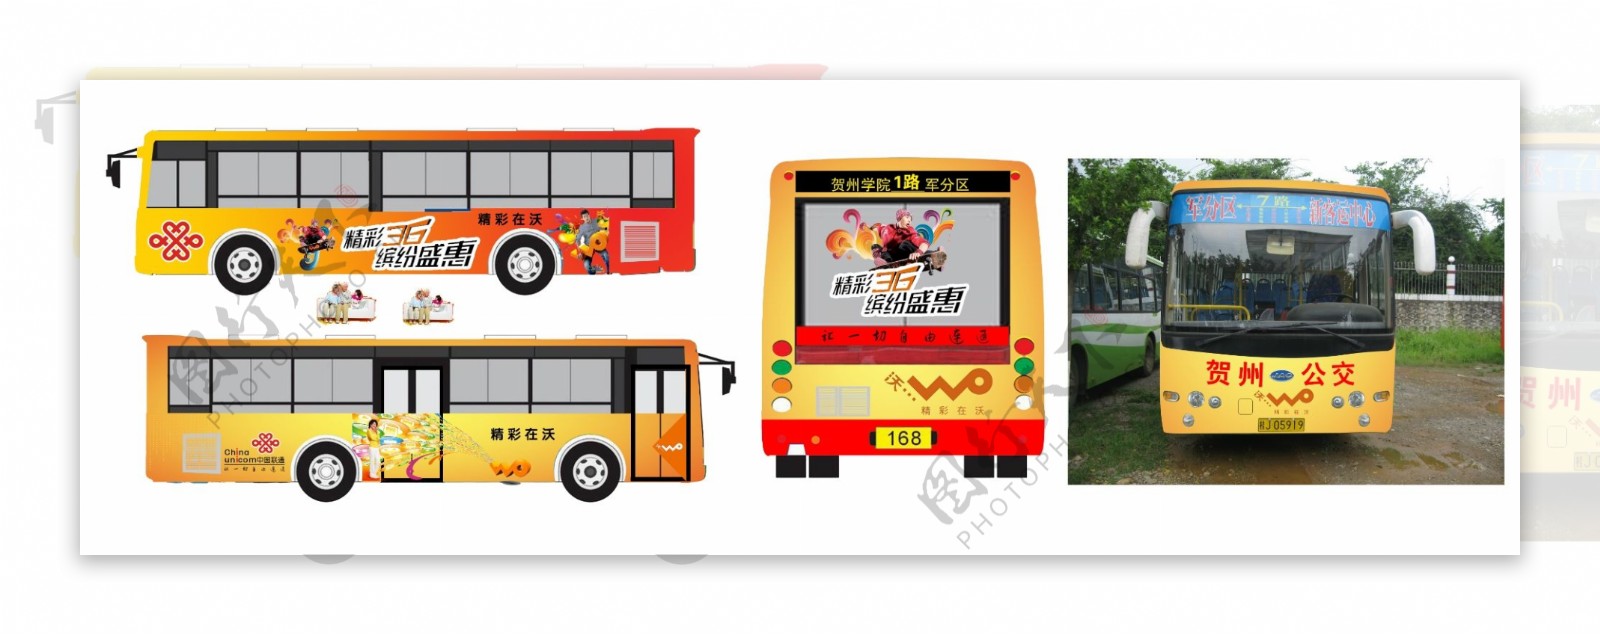 中国联通3g精彩在沃公车效果图图片